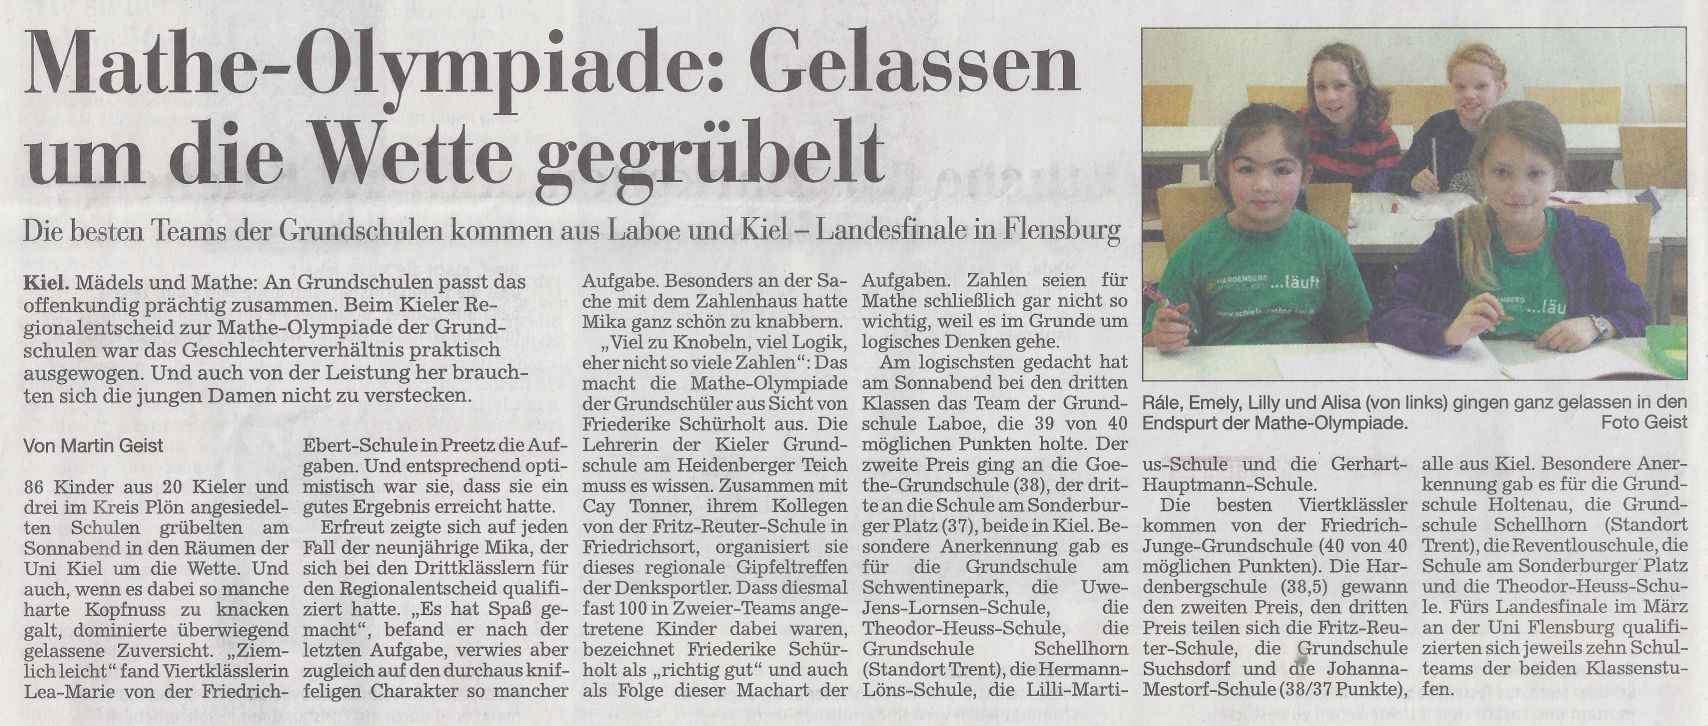 Quelle: Kieler Nachrichten vom 17.11.2014